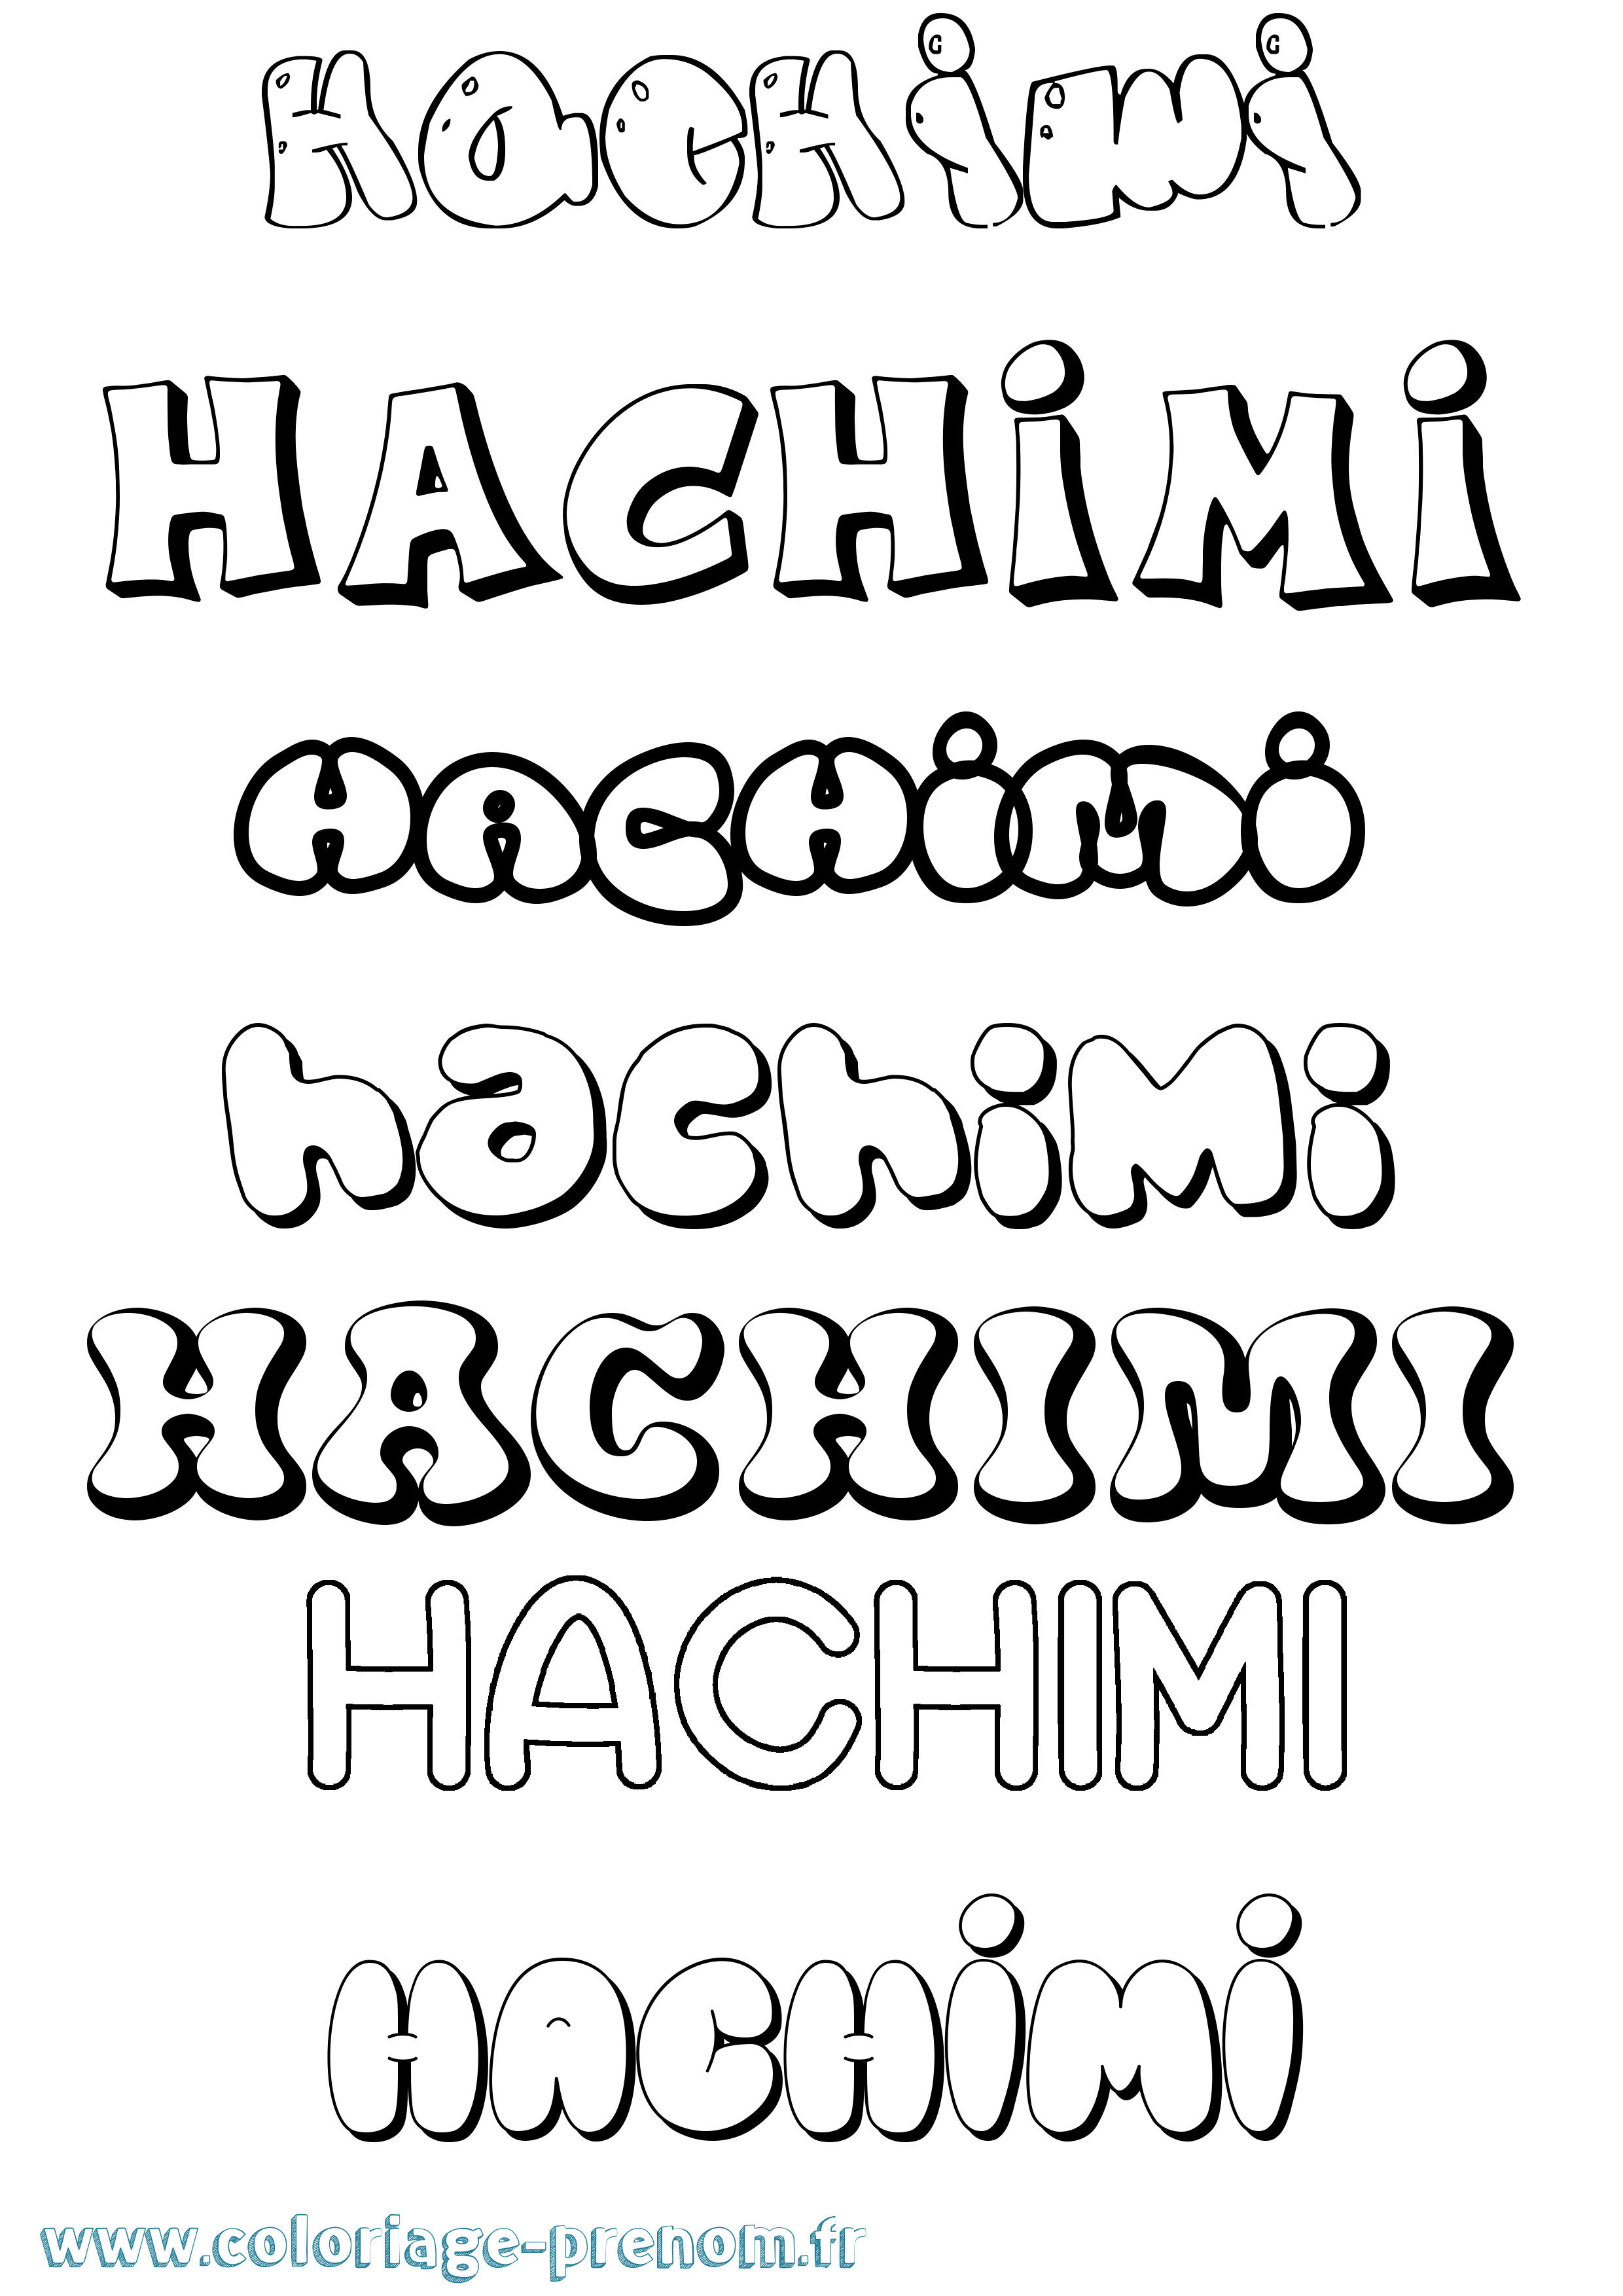 Coloriage prénom Hachimi Bubble